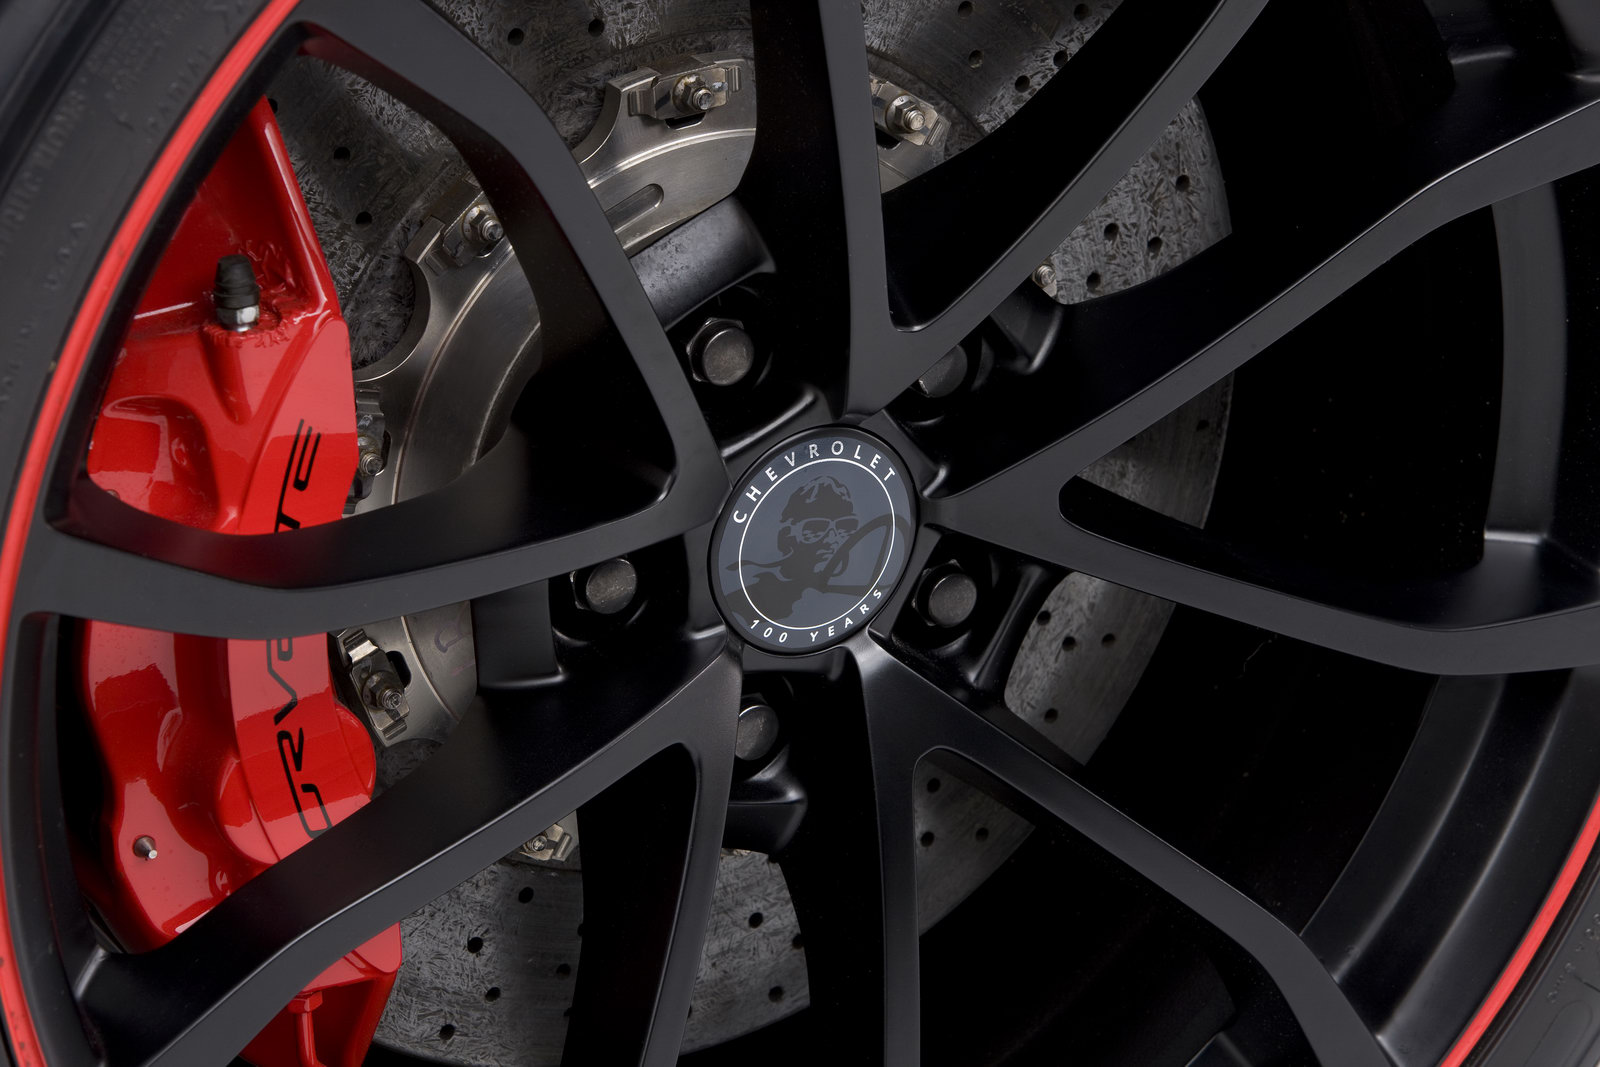 2012 Centennial Edition Corvette wheel